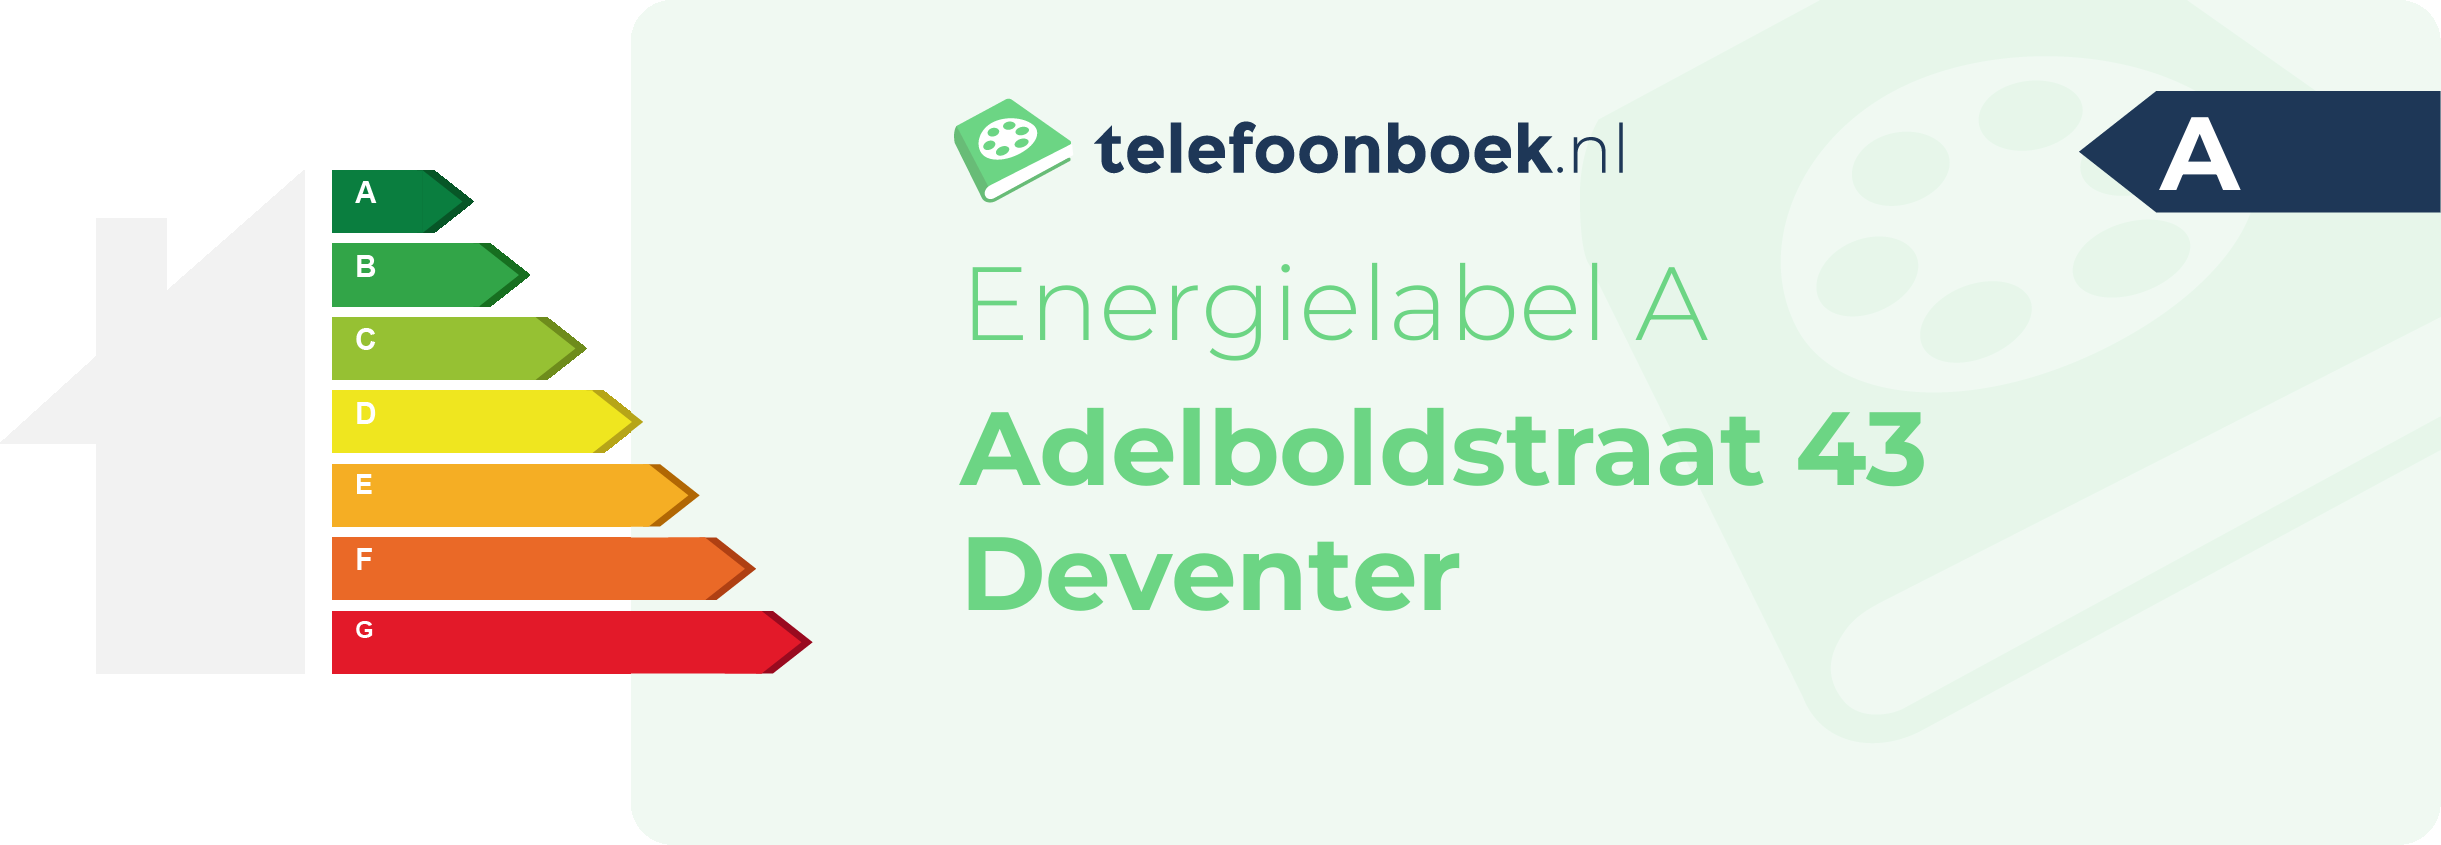 Energielabel Adelboldstraat 43 Deventer